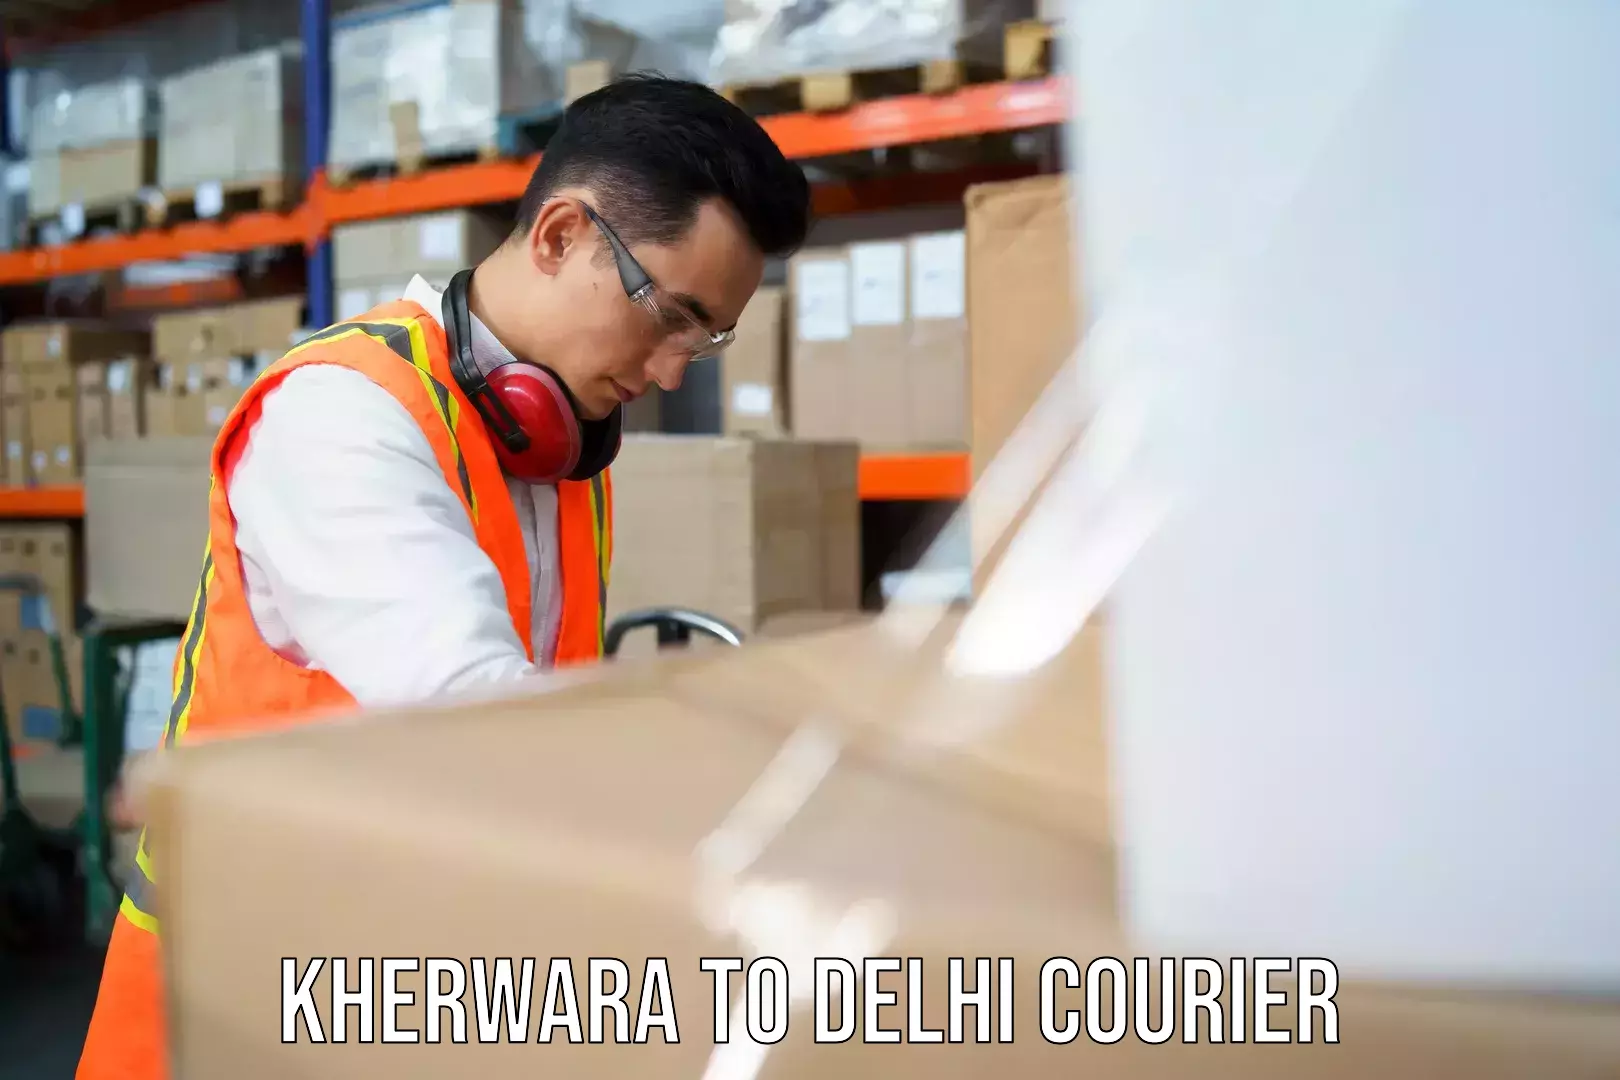 High-speed delivery Kherwara to Sansad Marg